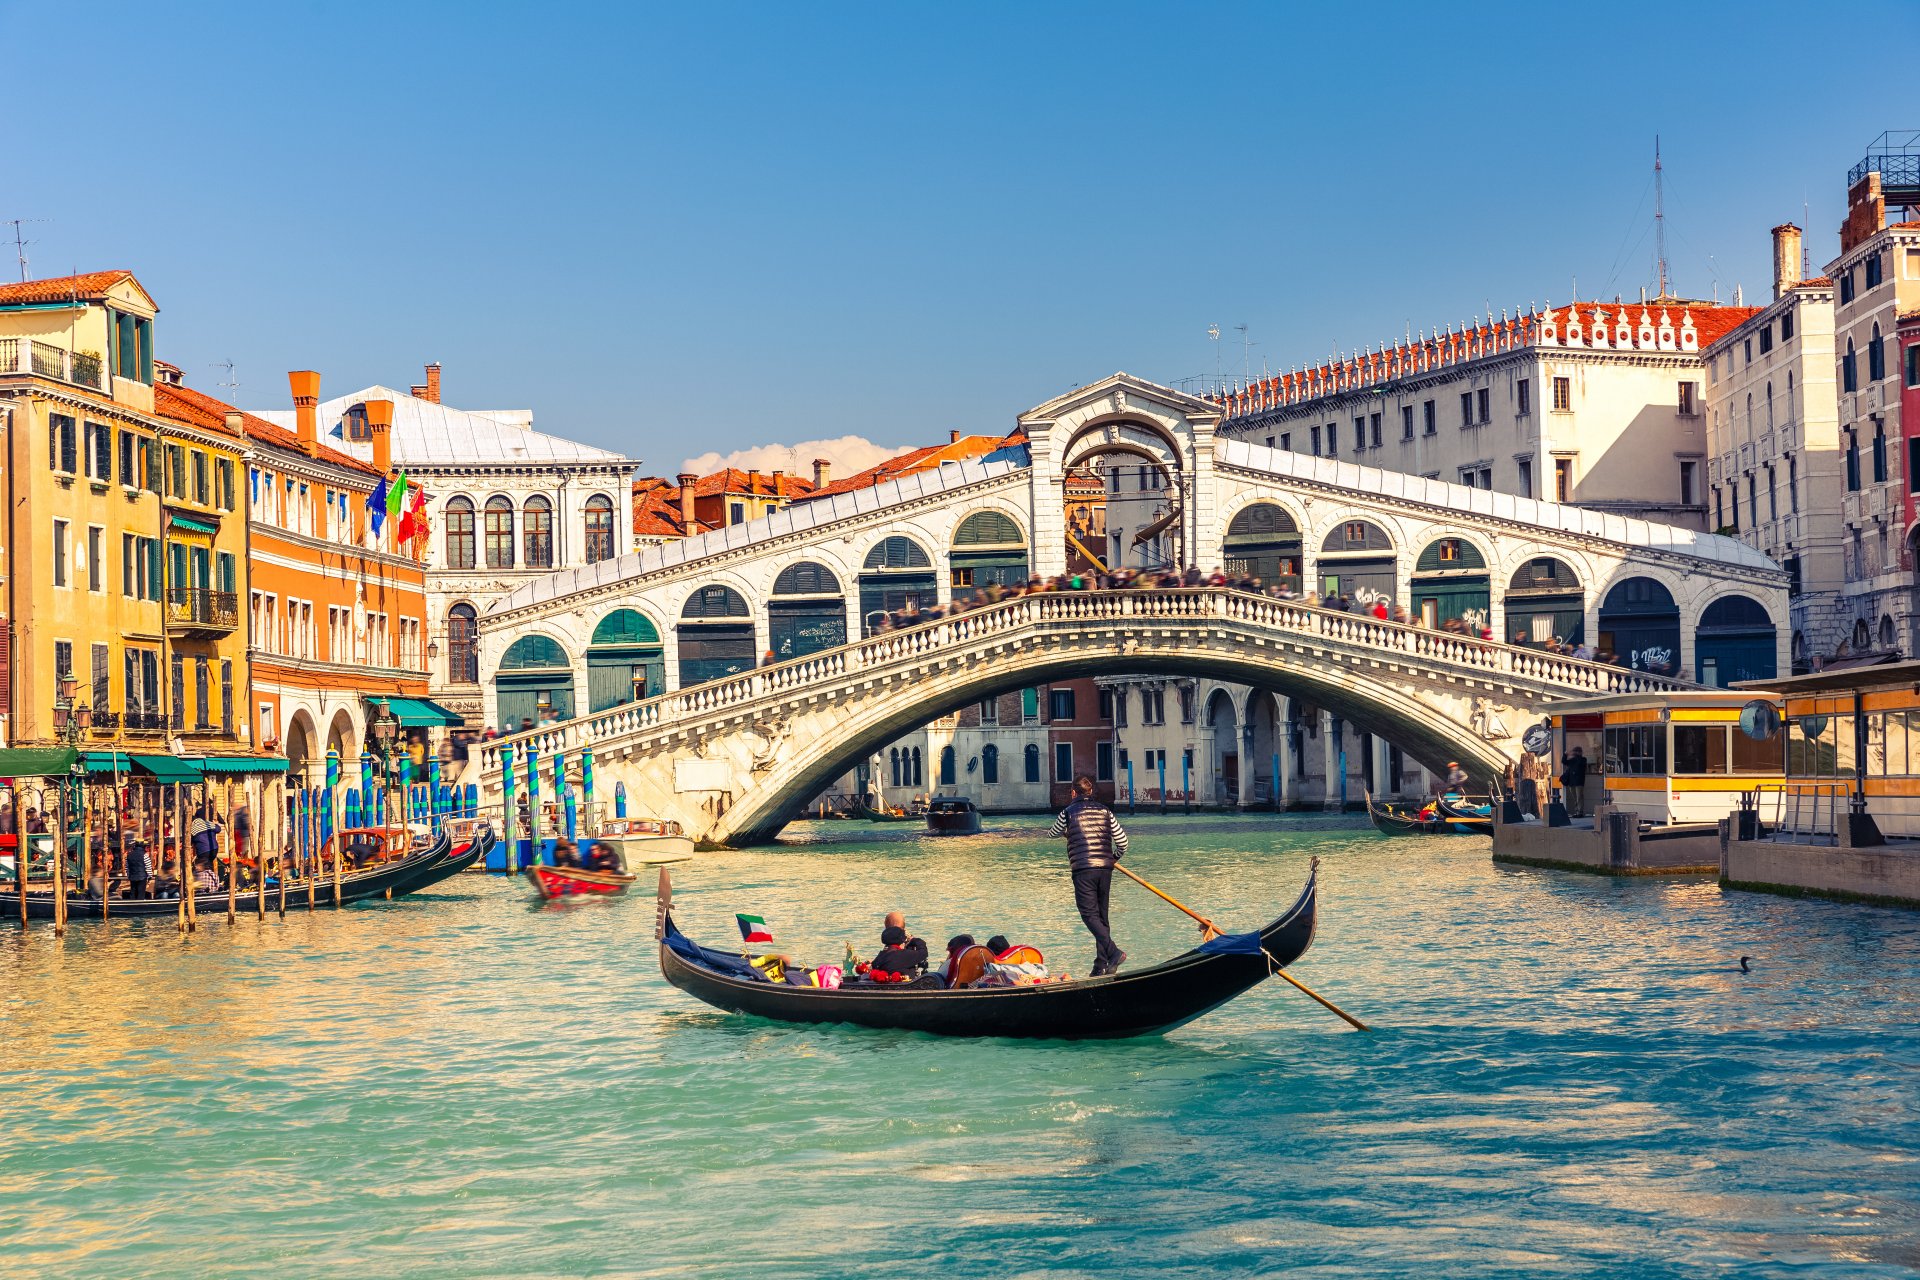 Что посмотреть в венеции обязательно за 1-2-3 дня самостоятельно в первую очередь?